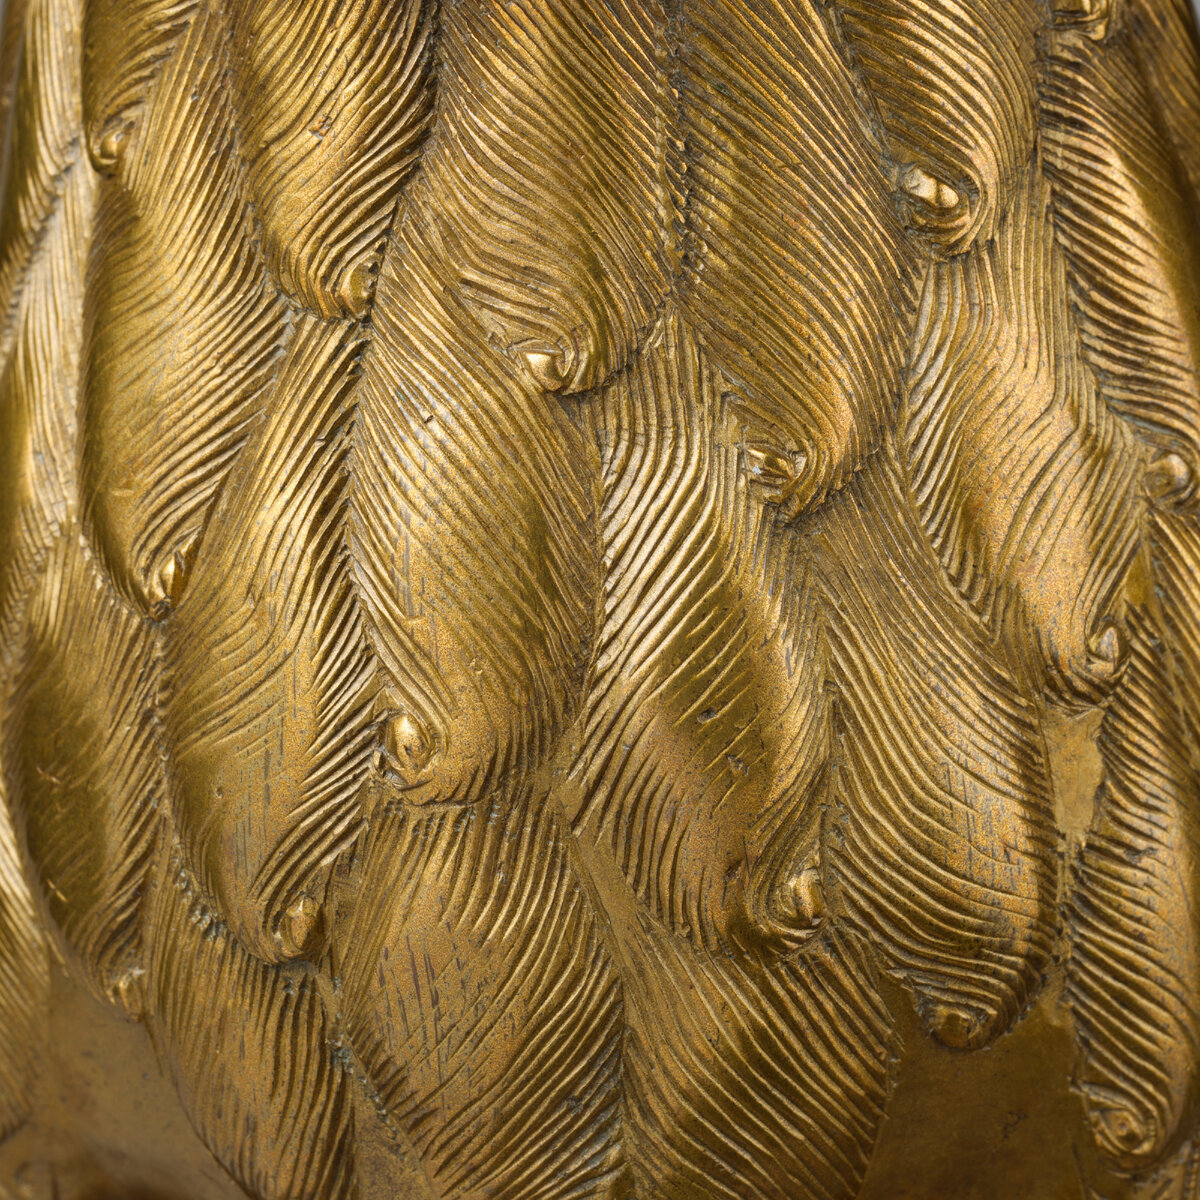 Акваманил "Лев". Германия. Около 1400 года. Музей Метрополитен, Нью-Йорк